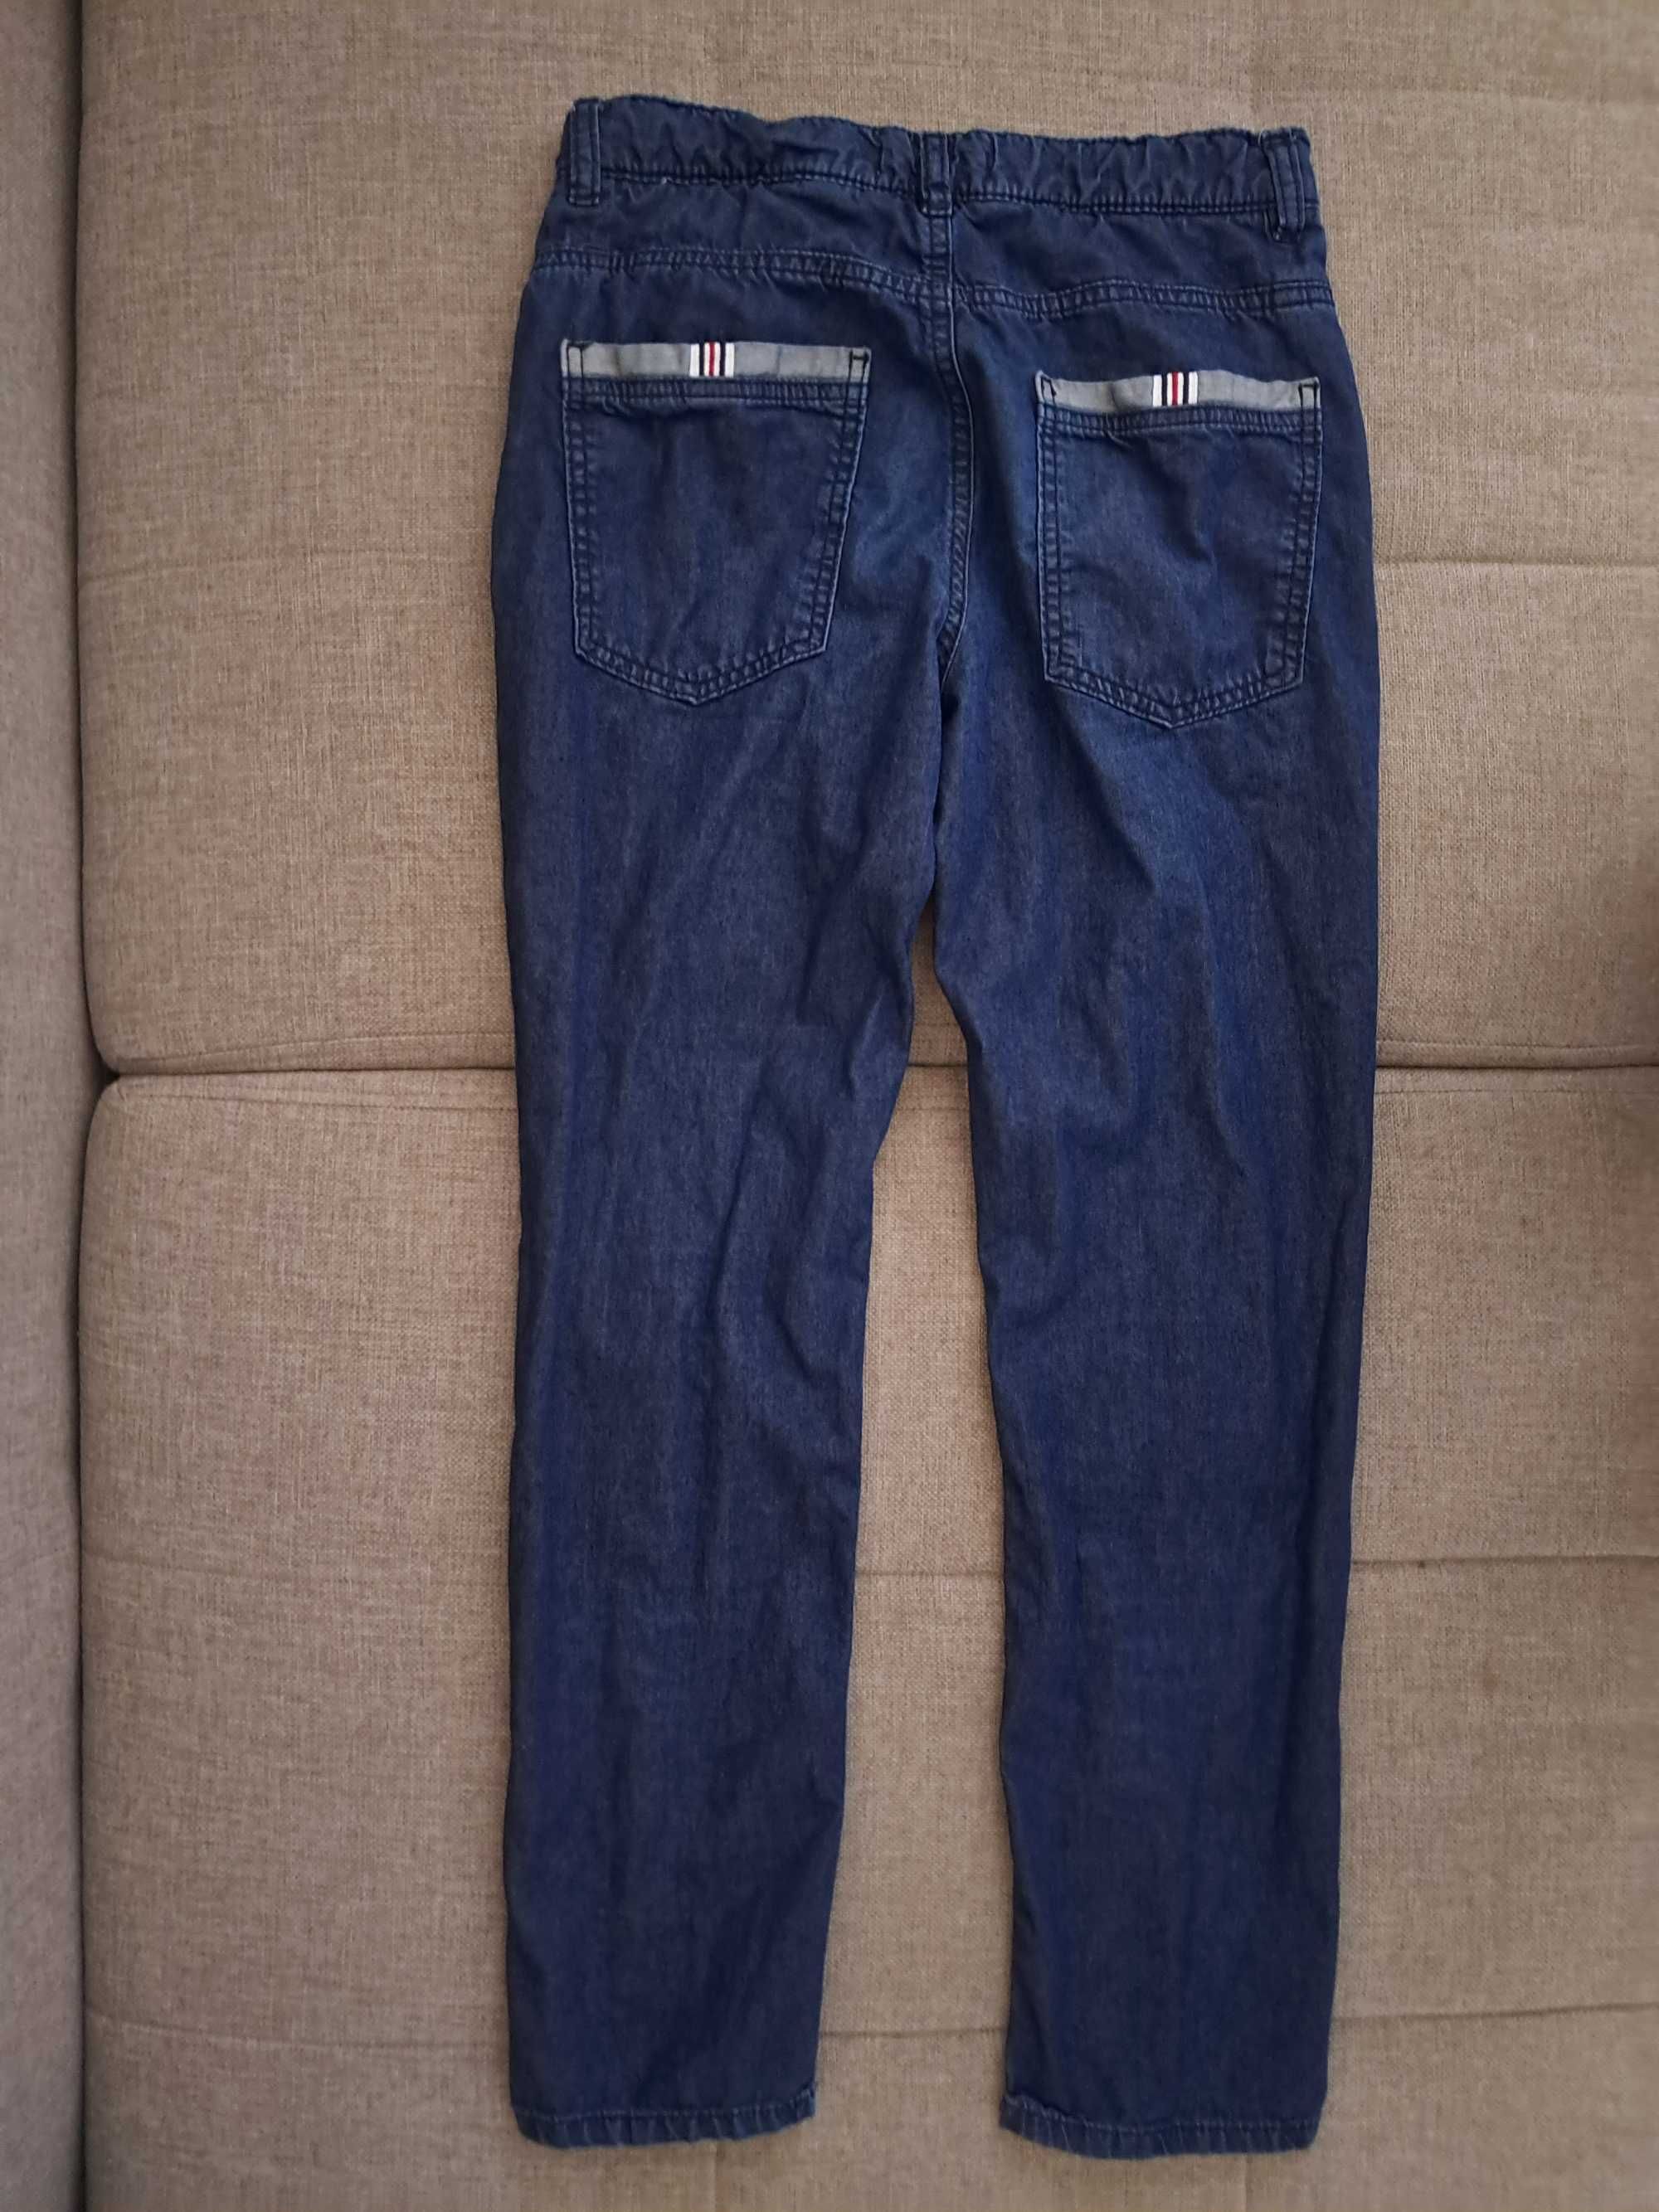 JEANS spodnie jeansowe RESERVED, chłopięce, r. 158cm, stan BDB